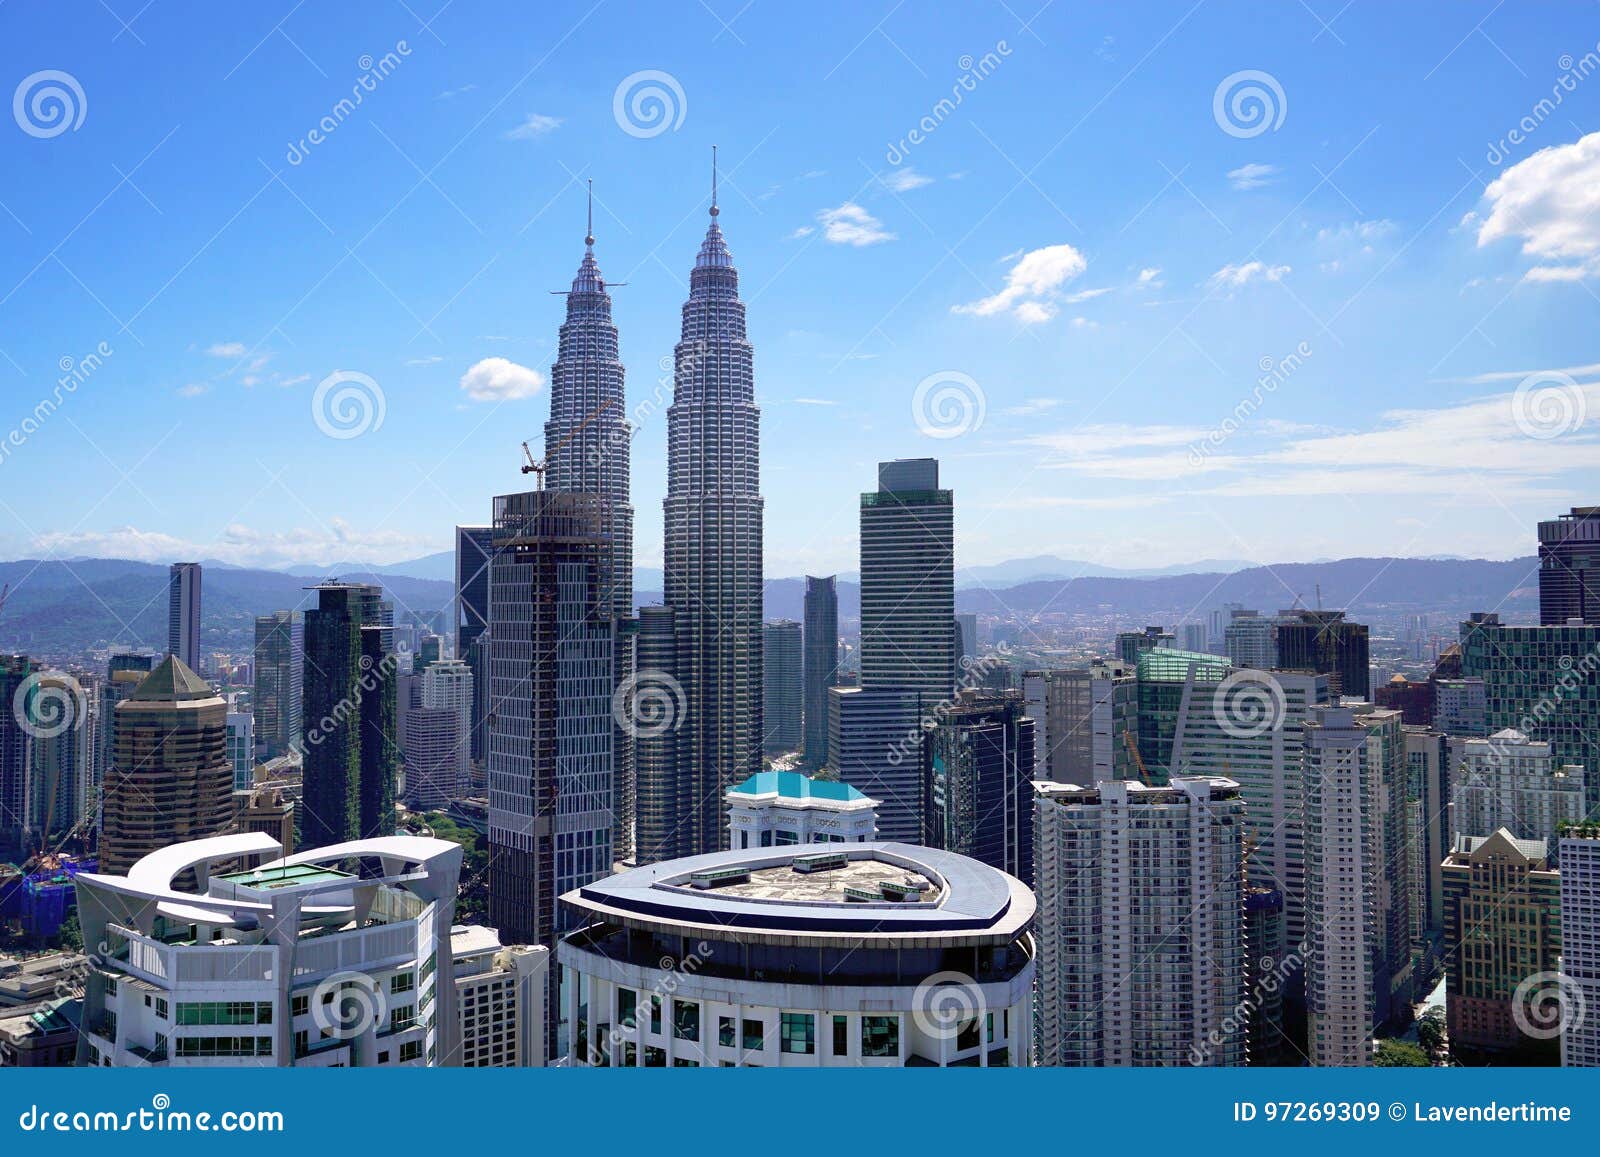 马来西亚首都城市景观标志性建筑menara Maybank Kl Tower Klcc Petronas双子塔马来西亚中部吉隆坡 编辑类库存图片 - 图片 包括有 布琼布拉, 资本 ...